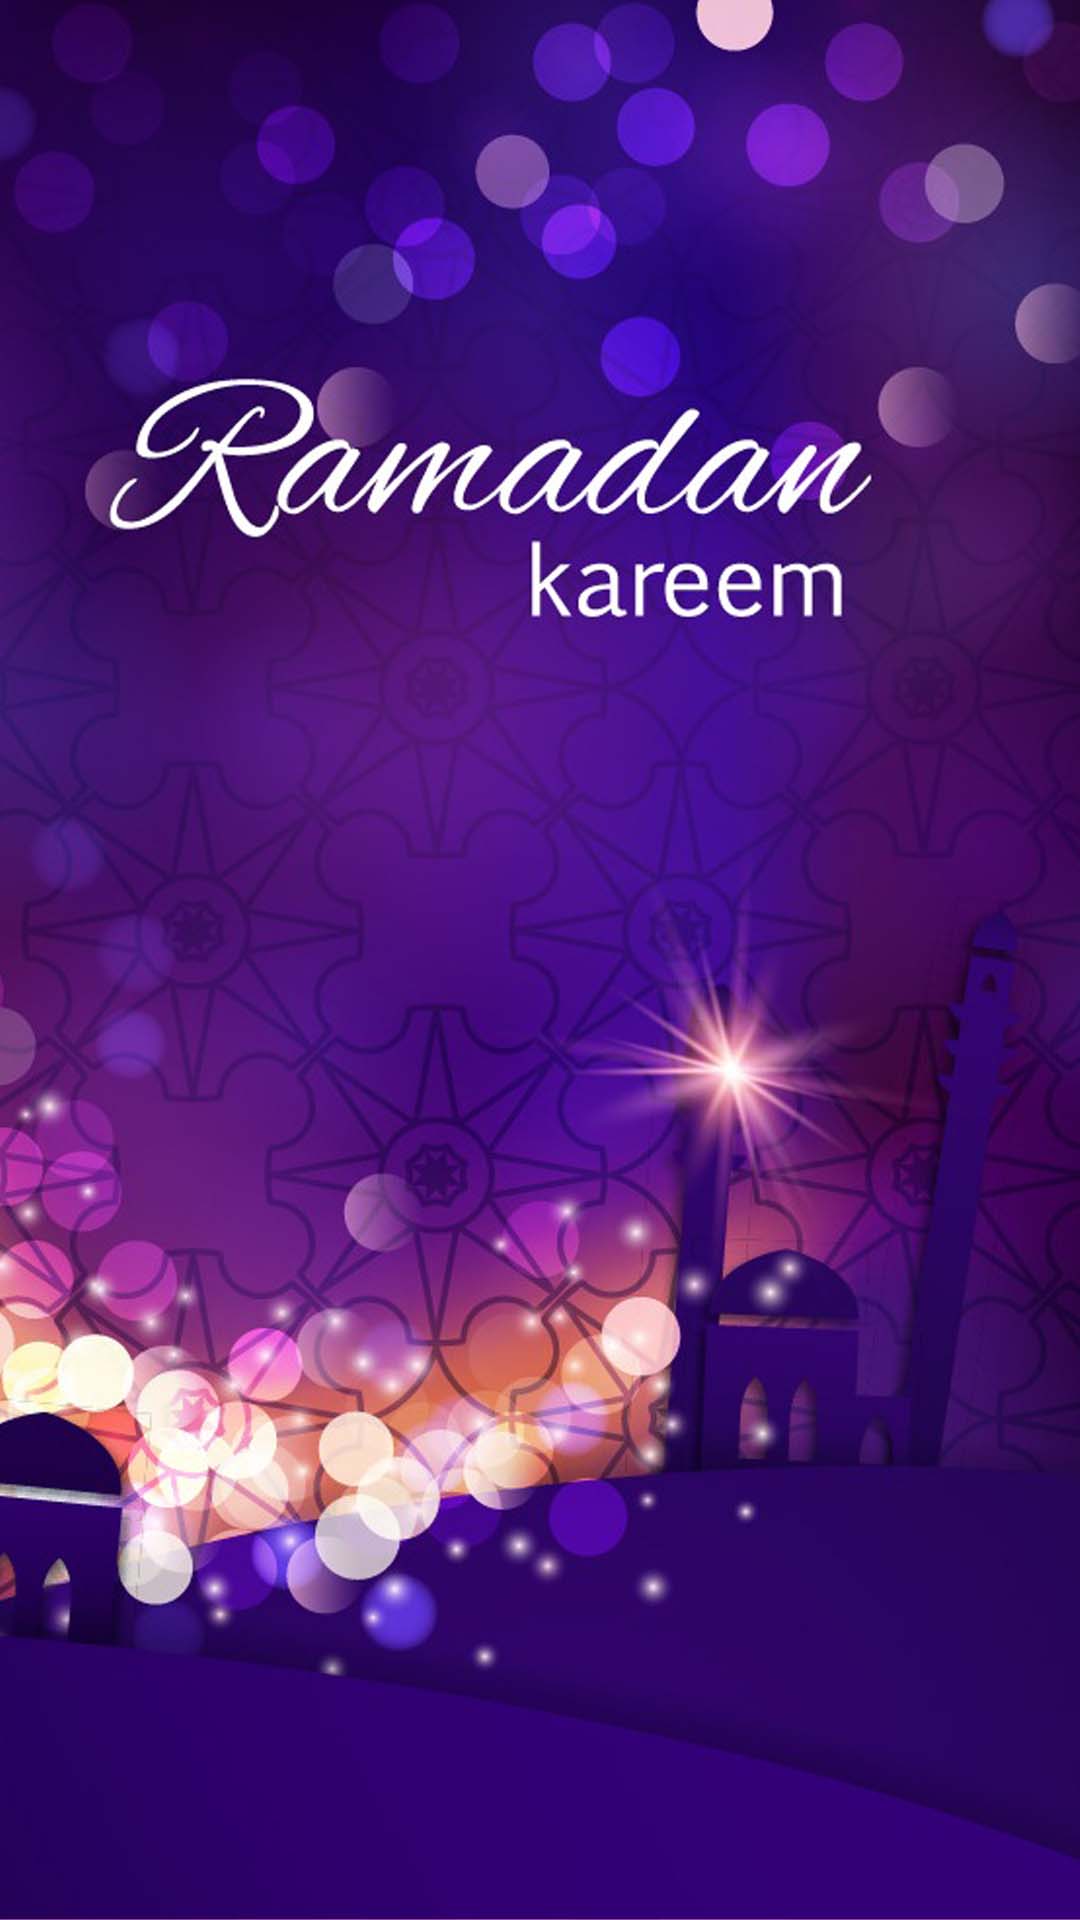 اجمل خلفيات الموبايل بمناسبه شهر رمضان 2020 HD-13